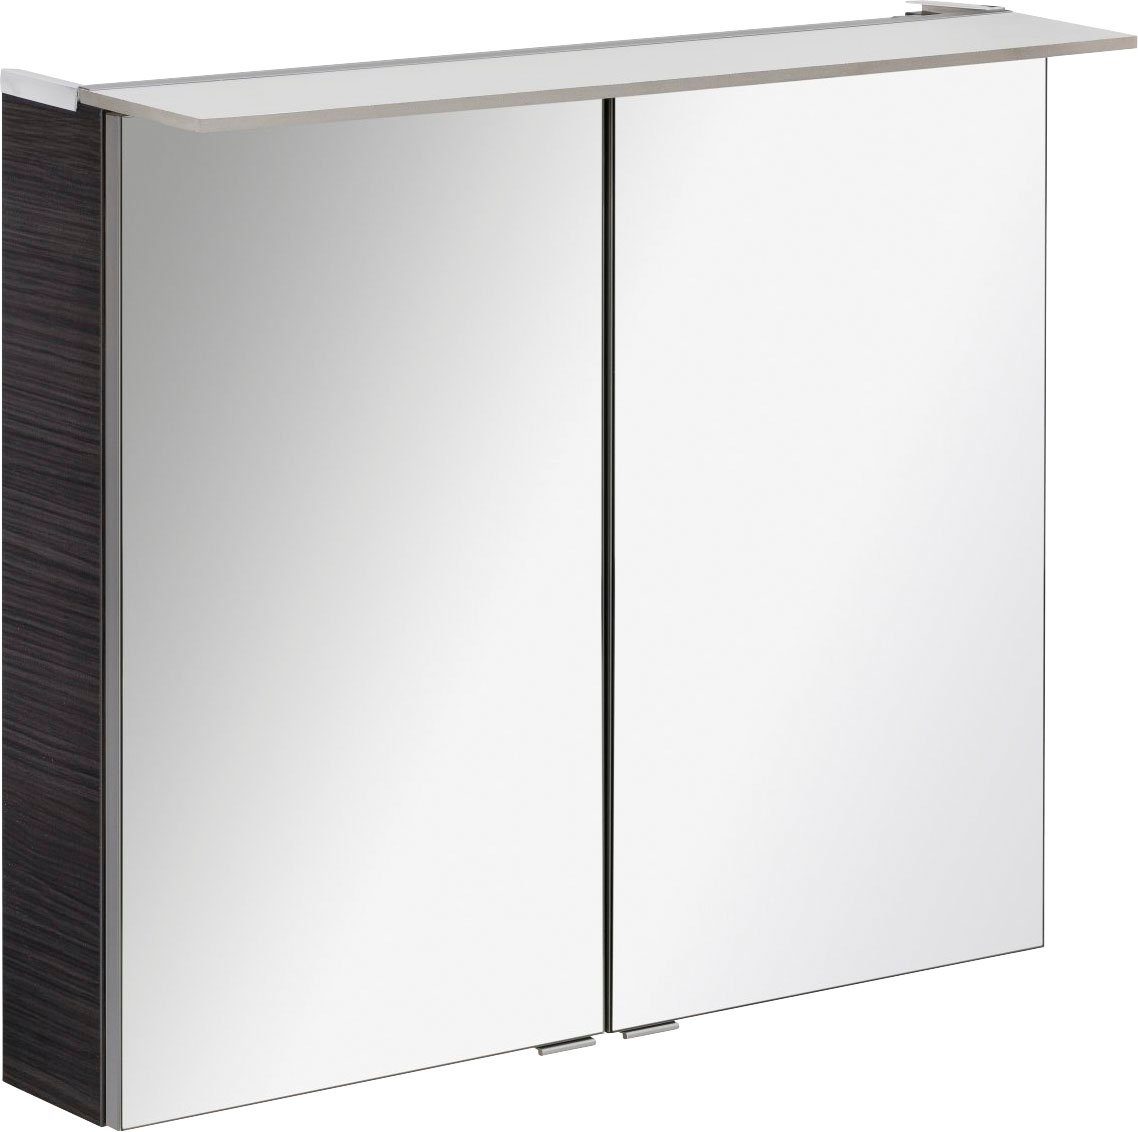 FACKELMANN Spiegelschrank PE 80 - Dark-Oak Badmöbel Breite 80 cm, 2 Türen,  doppelseitig verspiegelt, Äußere Türen innen verspiegelt, 3D-Effekt